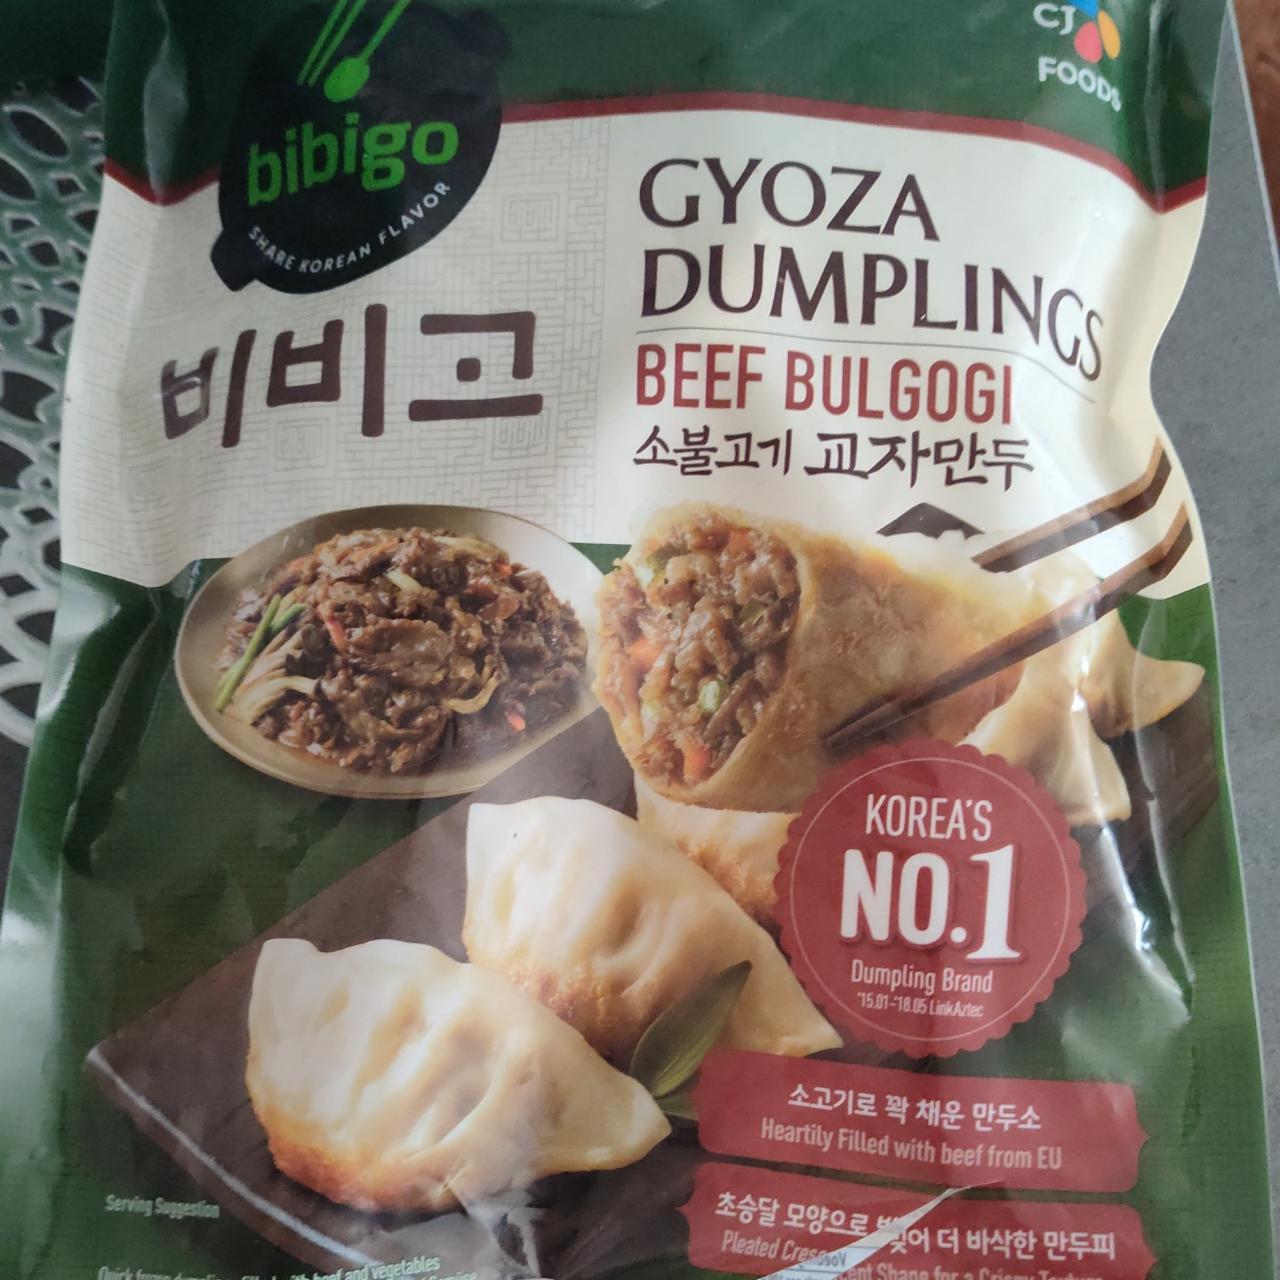 Fotografie - Gyoza Dumplings Beef Bulgogi Bibigo